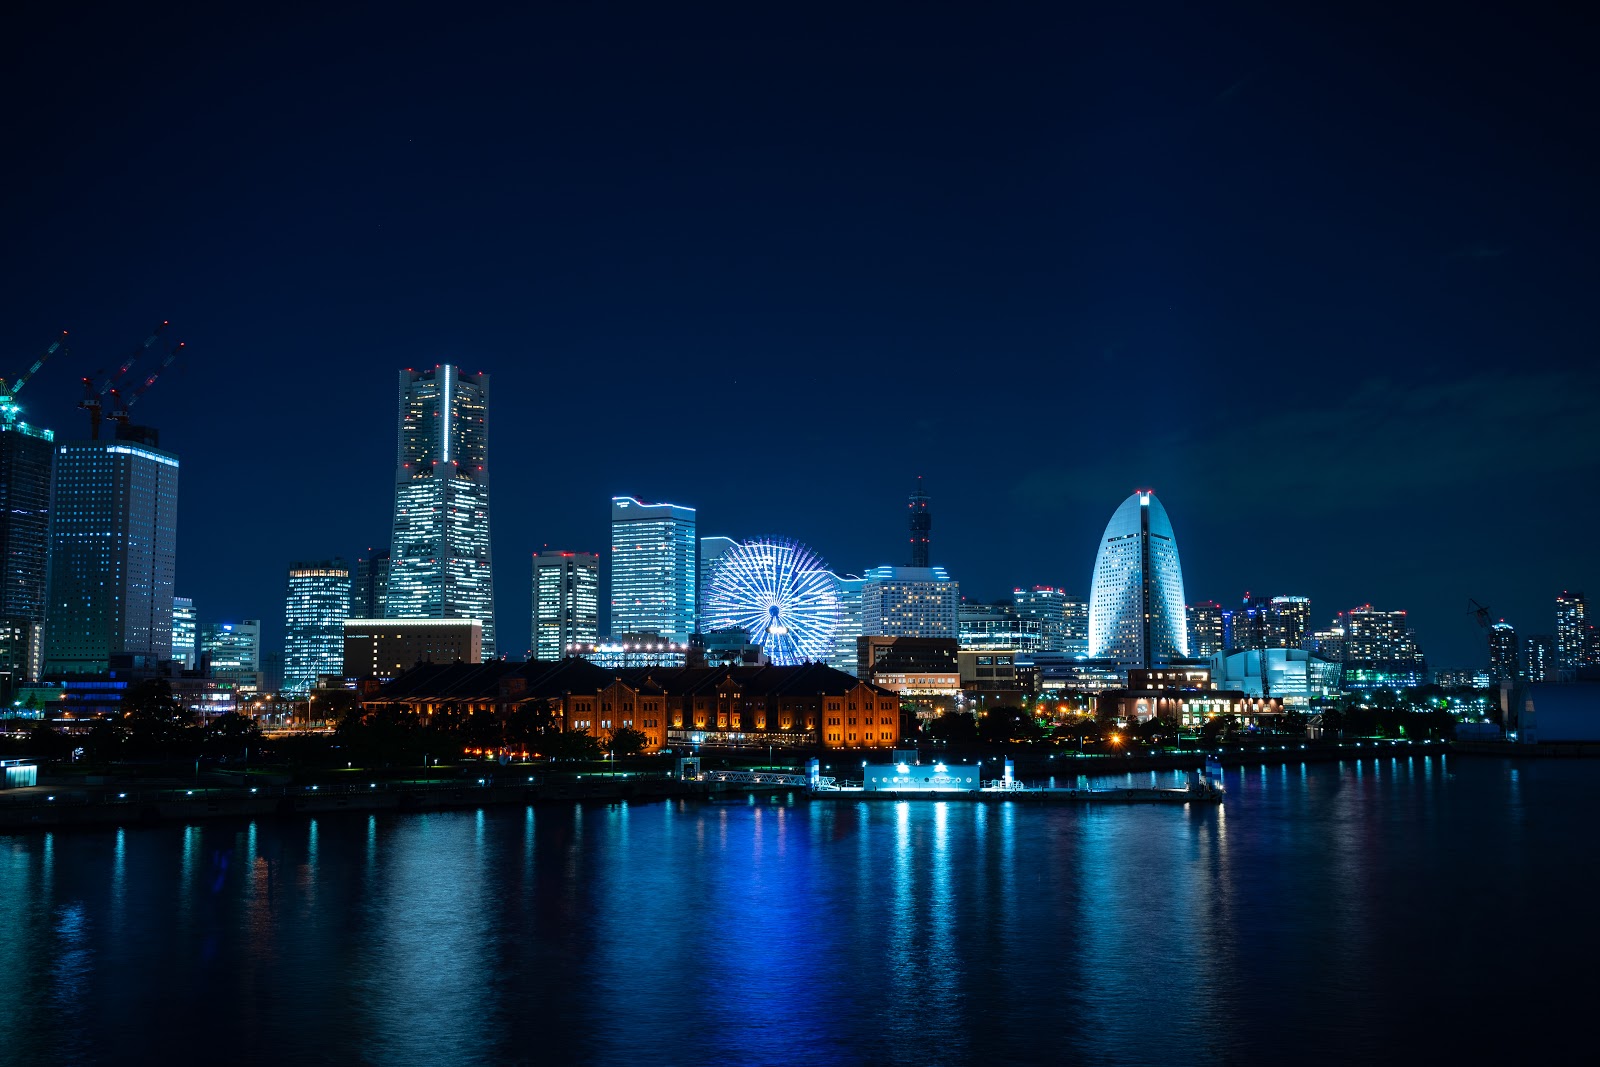 ものぐさブルーライト 夜のみなとみらいを歩く Yokohama Night Walk Vol 3